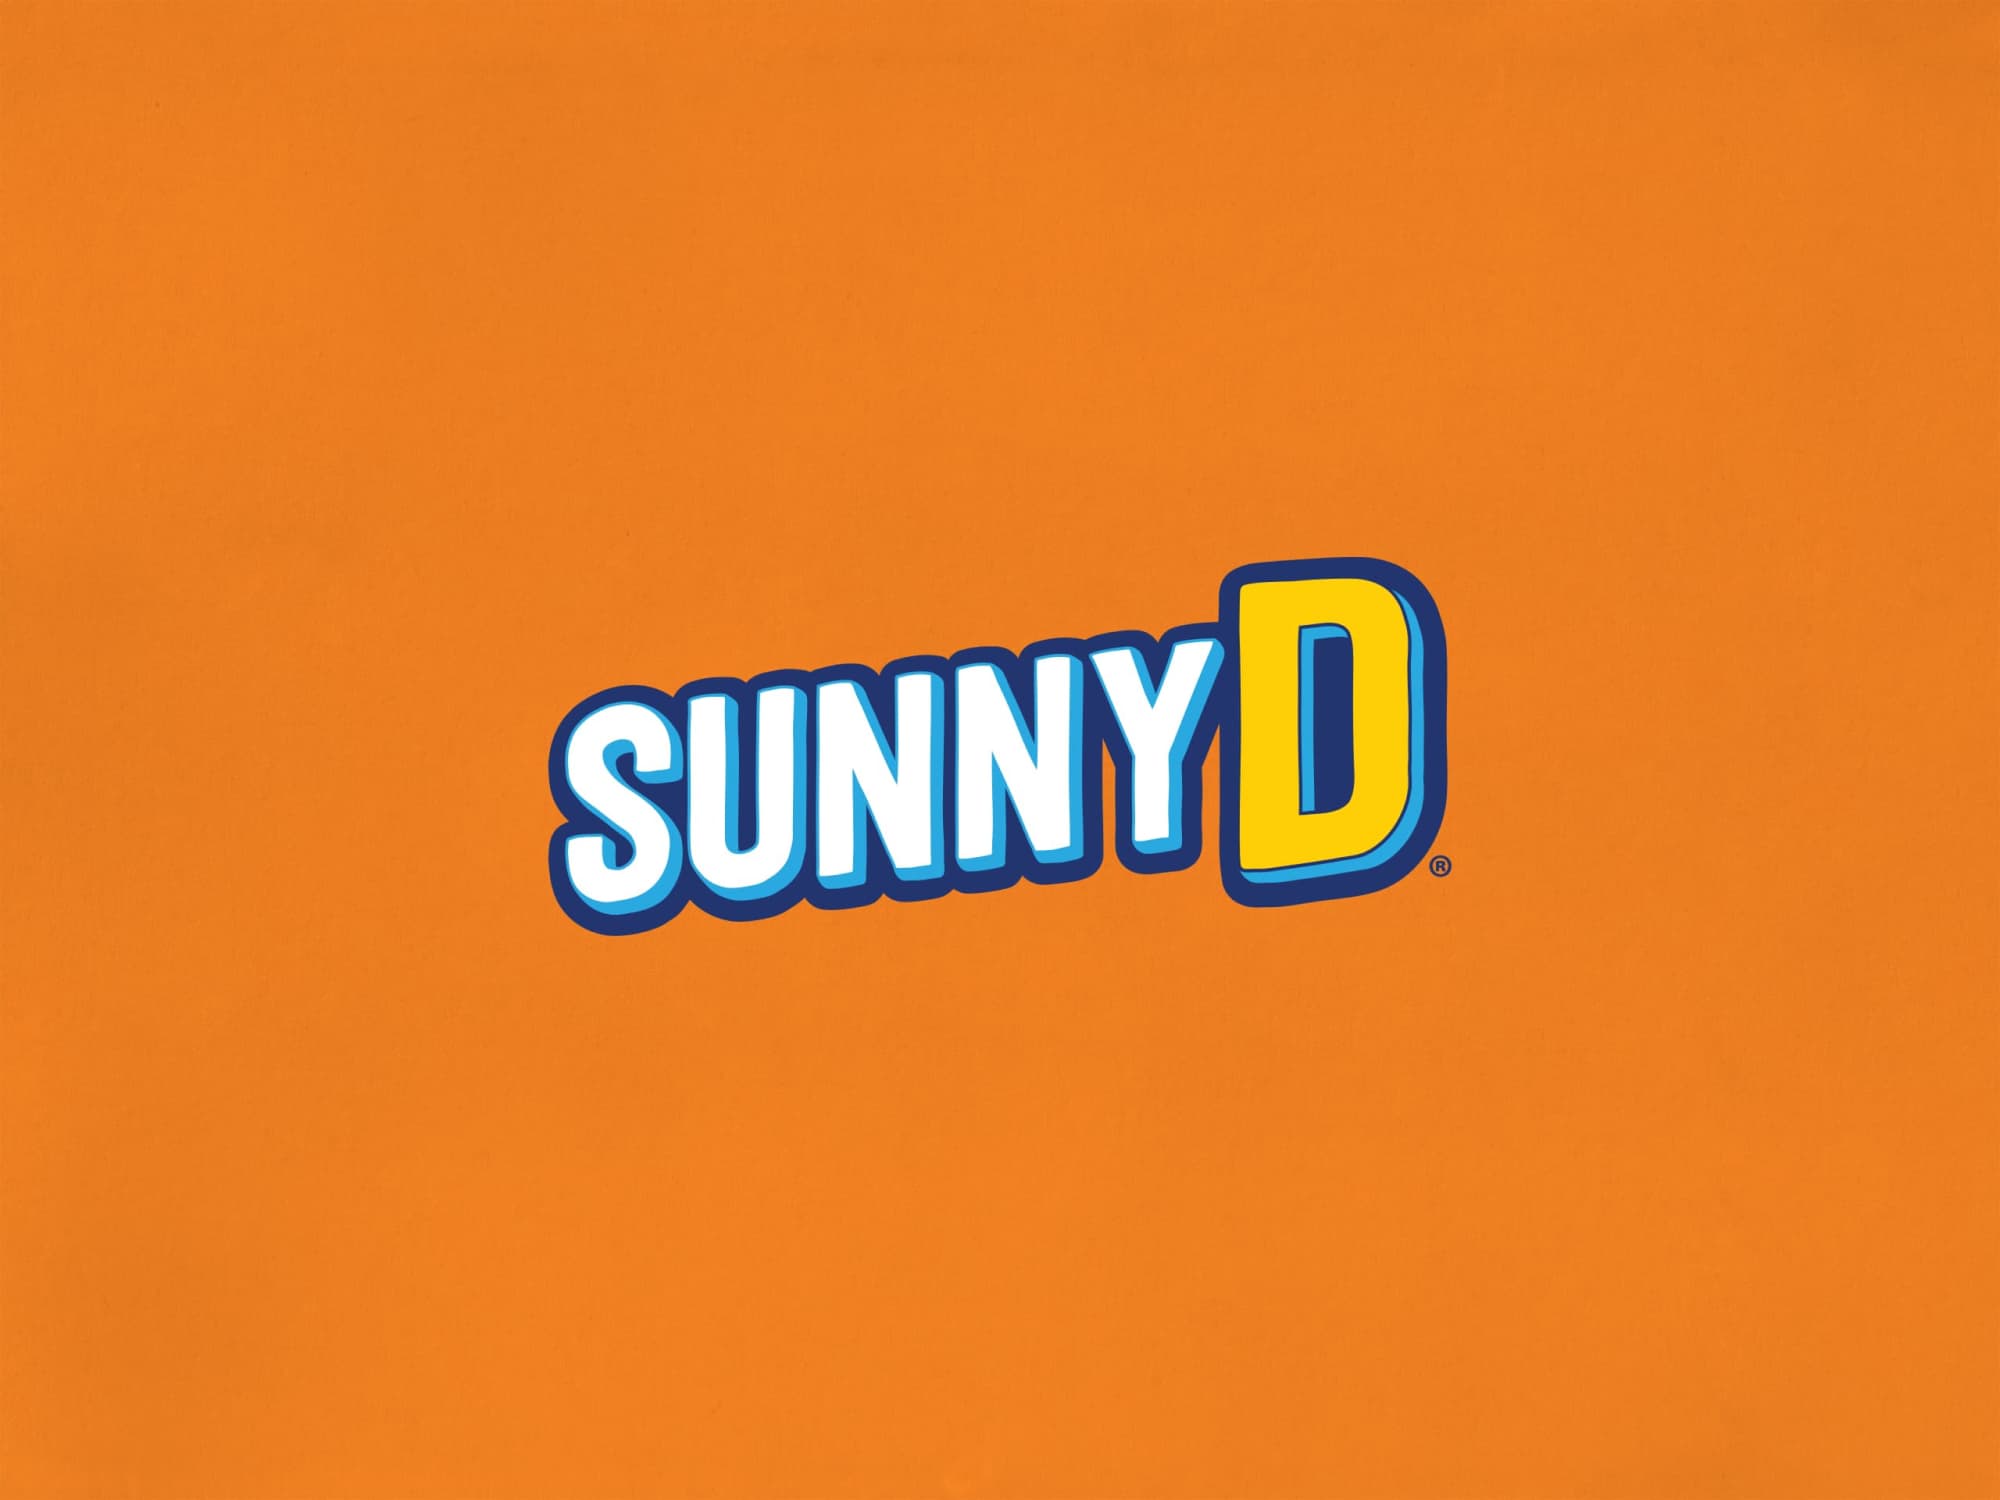 sunnyd-logo